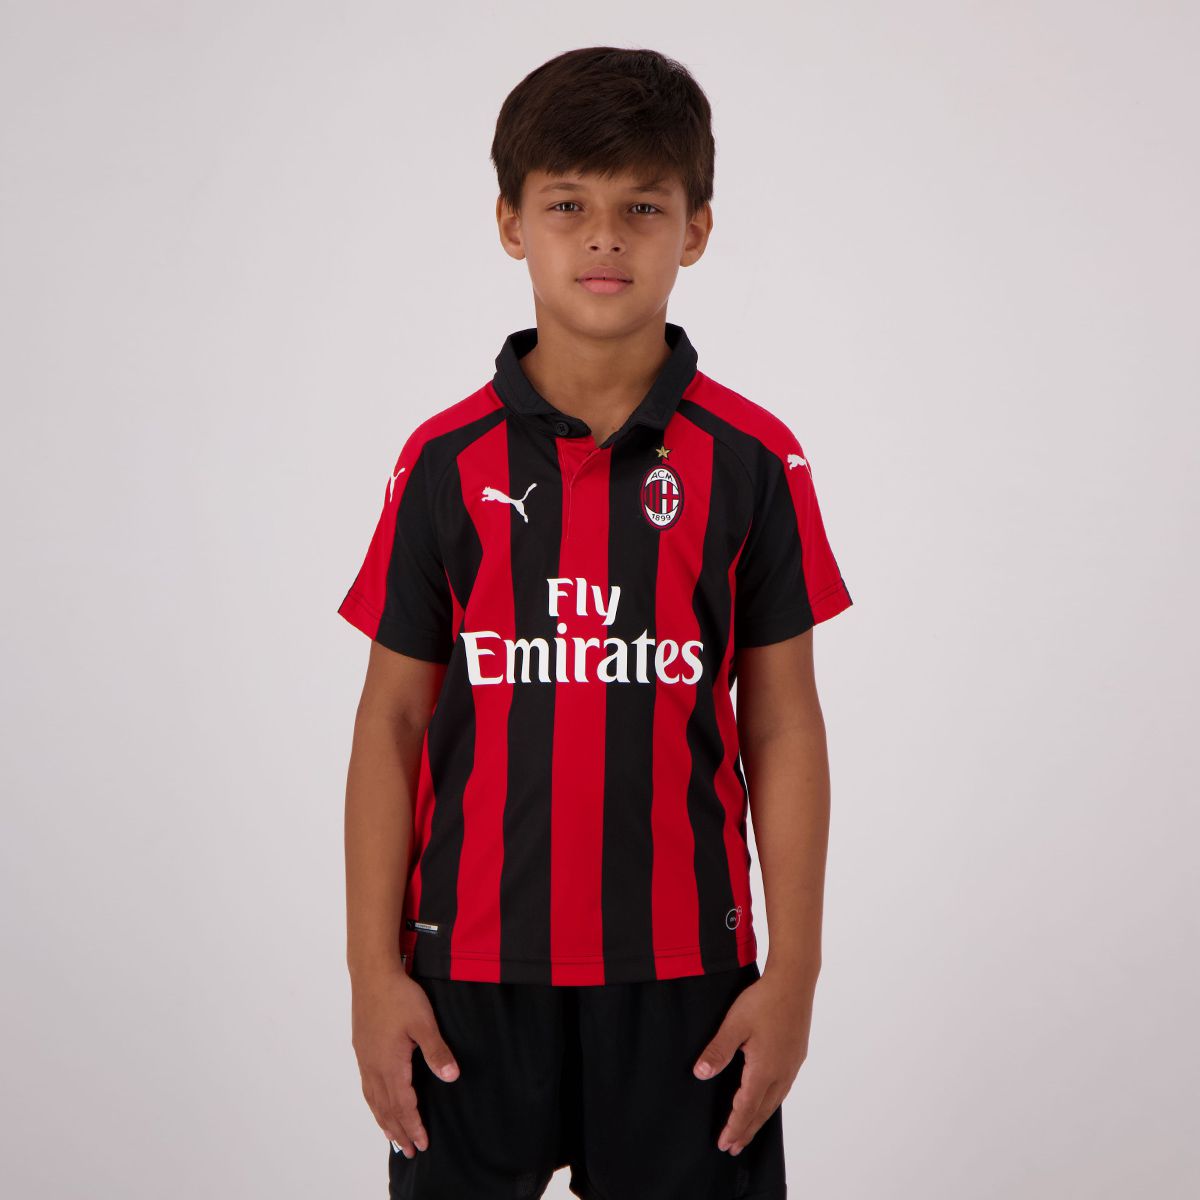 BOYS FOOTBALL KIT SHORT SET MILAN RED/BLACK 2-10years BNWT #MILAN 